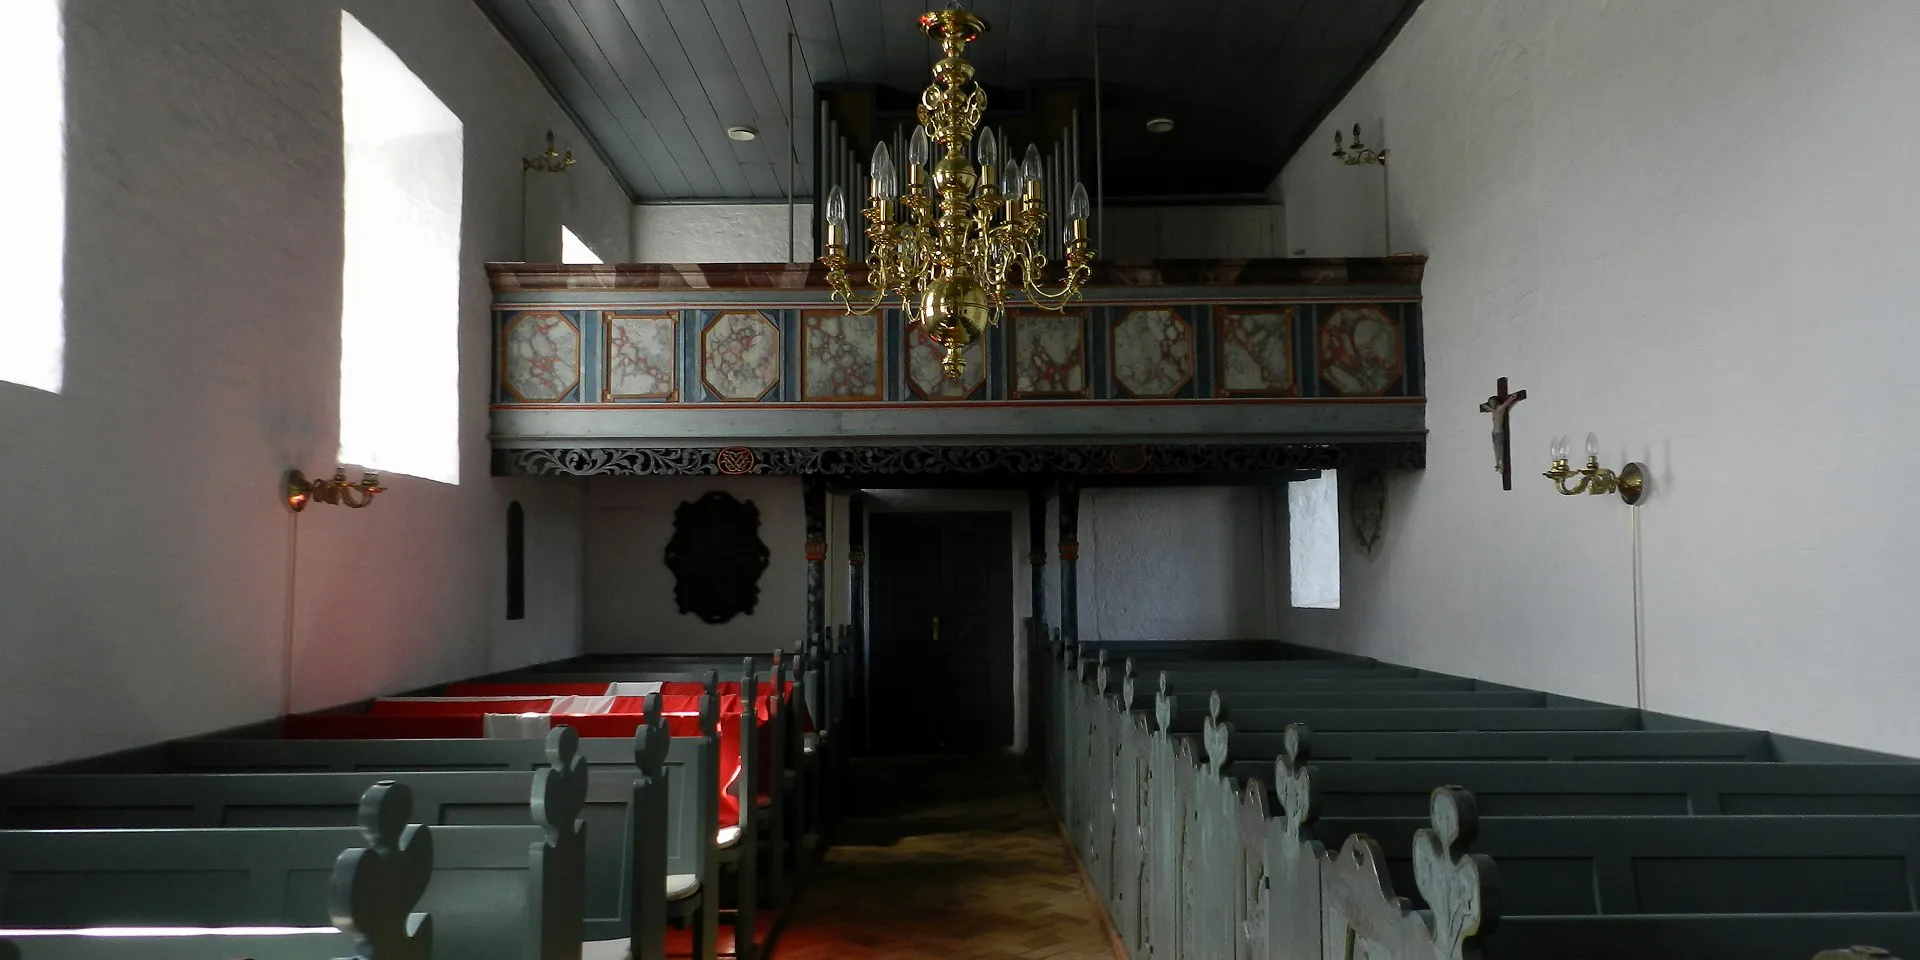 Højrup Kirke